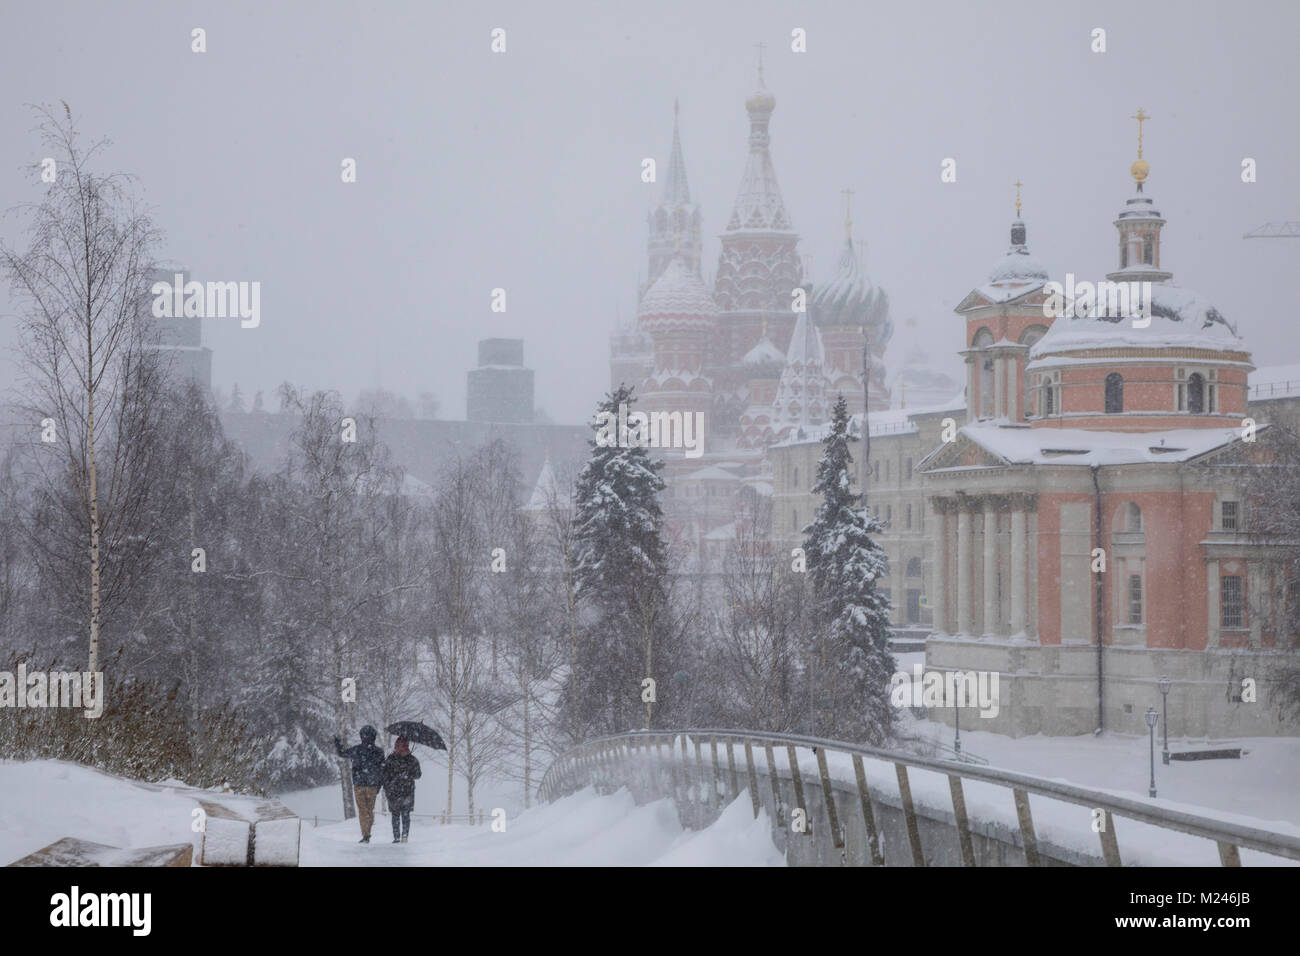 Mosca, Russia - Febbraio 4, 2018: persone passeggiate nel parco Zaryadye a Mosca durante la nevicata, Russia Credito: Nikolay Vinokurov/Alamy Live News Foto Stock